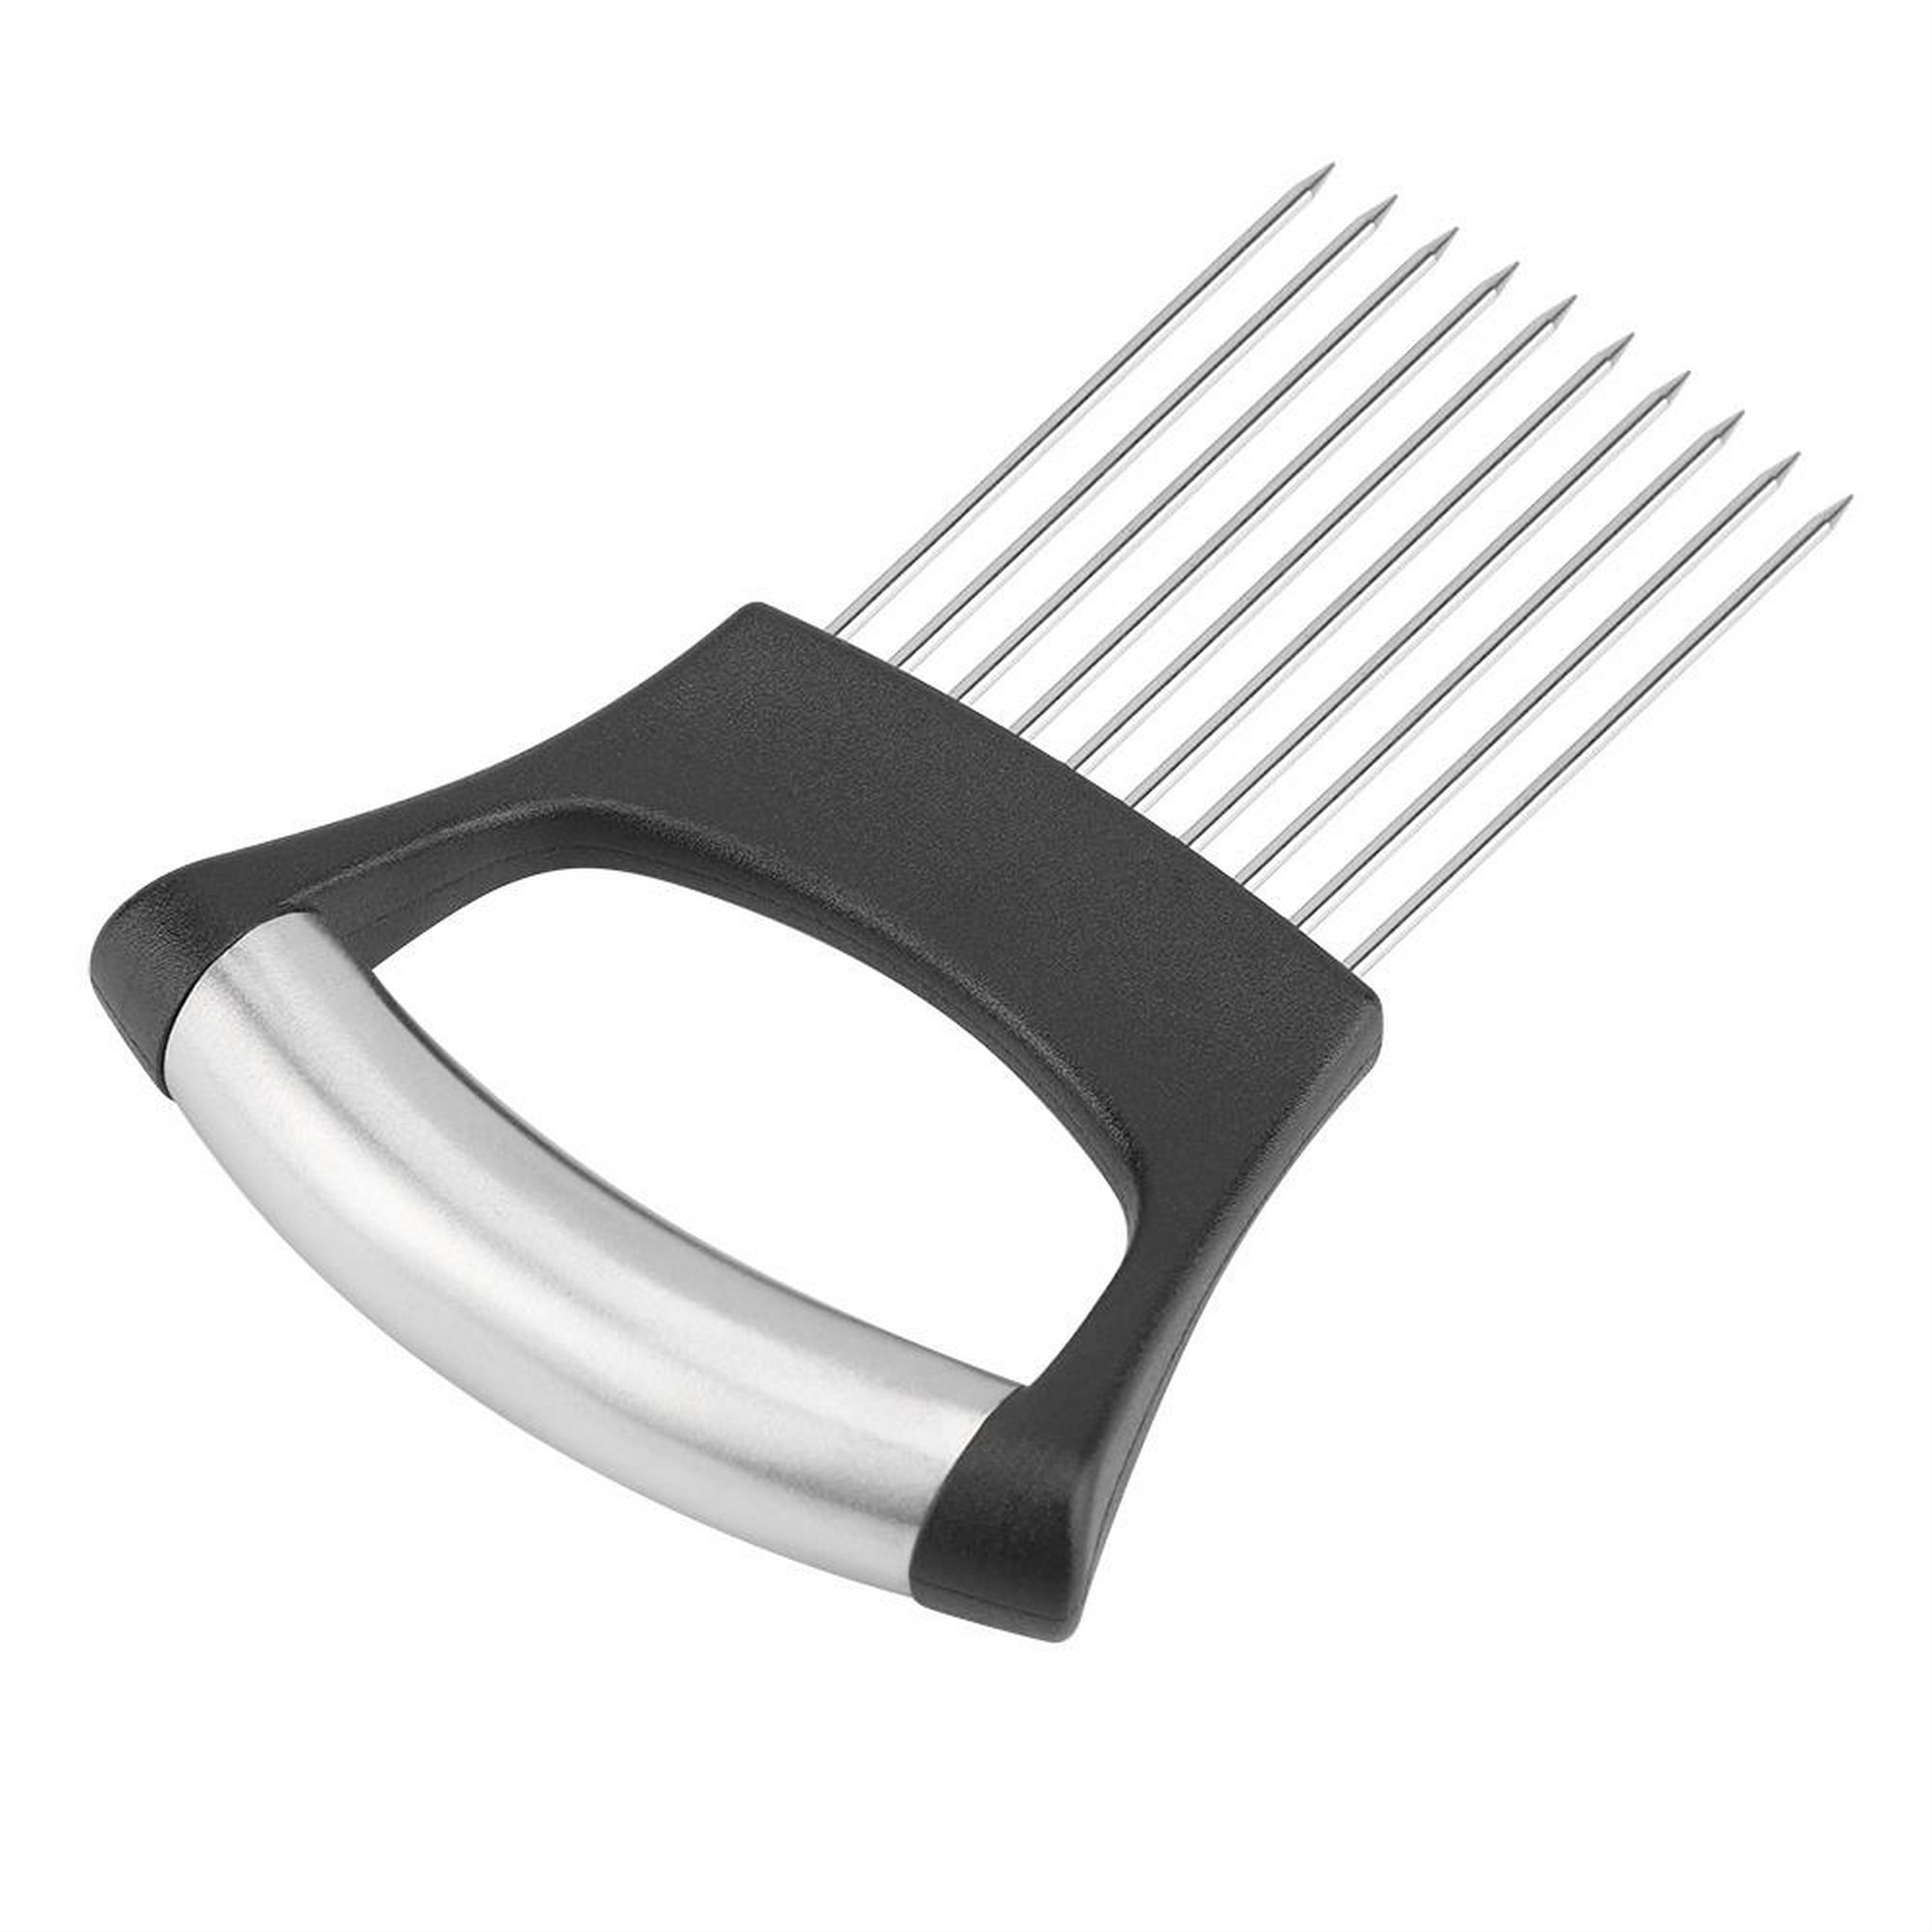 Cortador de cebolla de acero inoxidable, soporte para rebanar alimentos,  tenedor para cortar verduras, utensilios de cocina